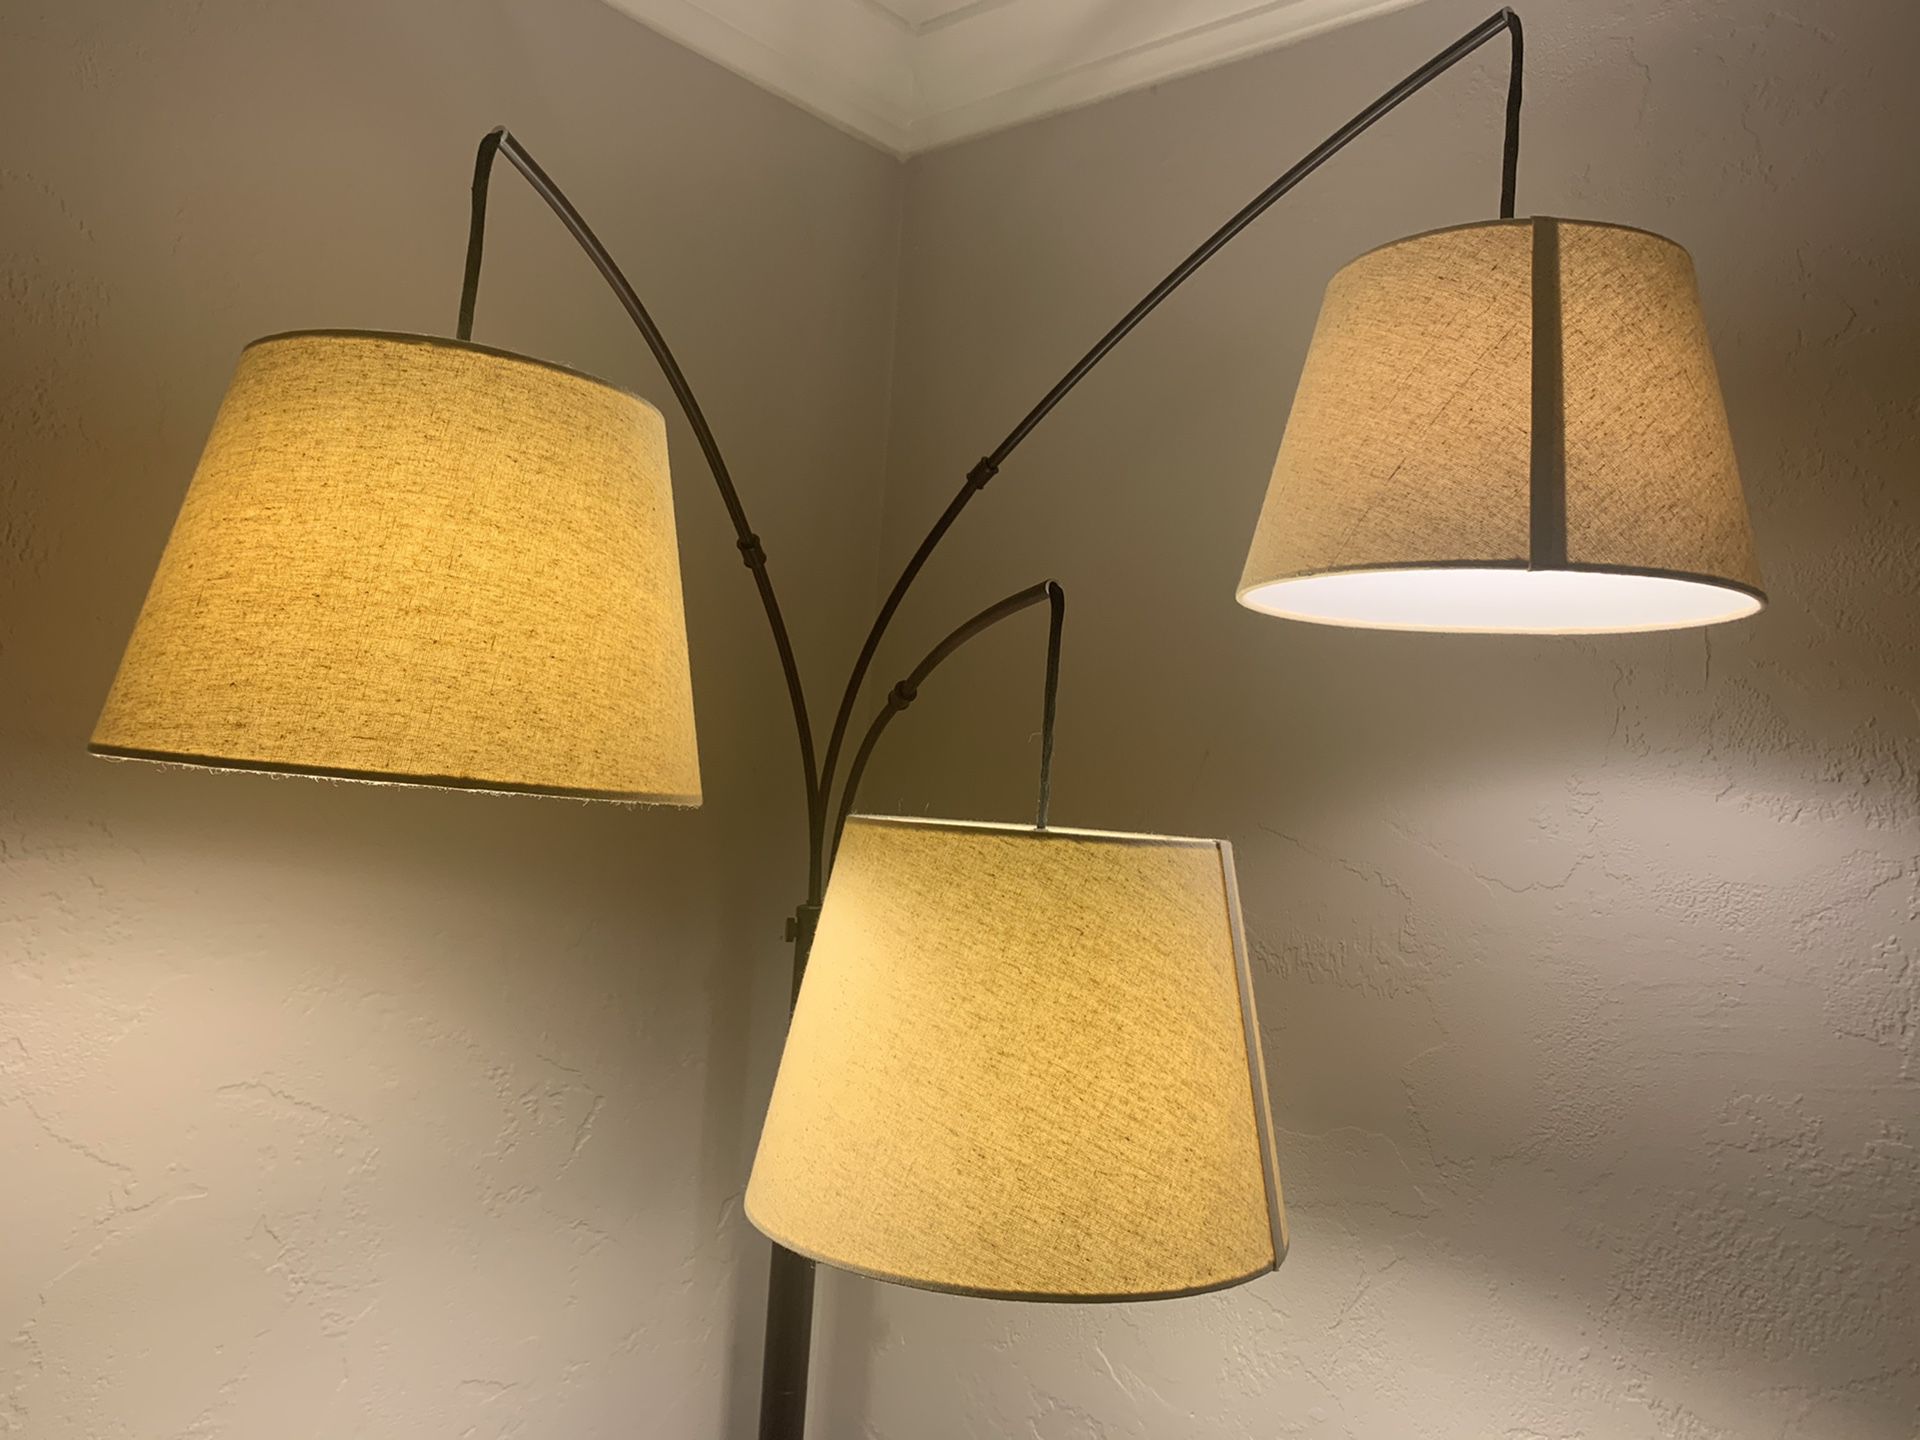 Bedroom lamp